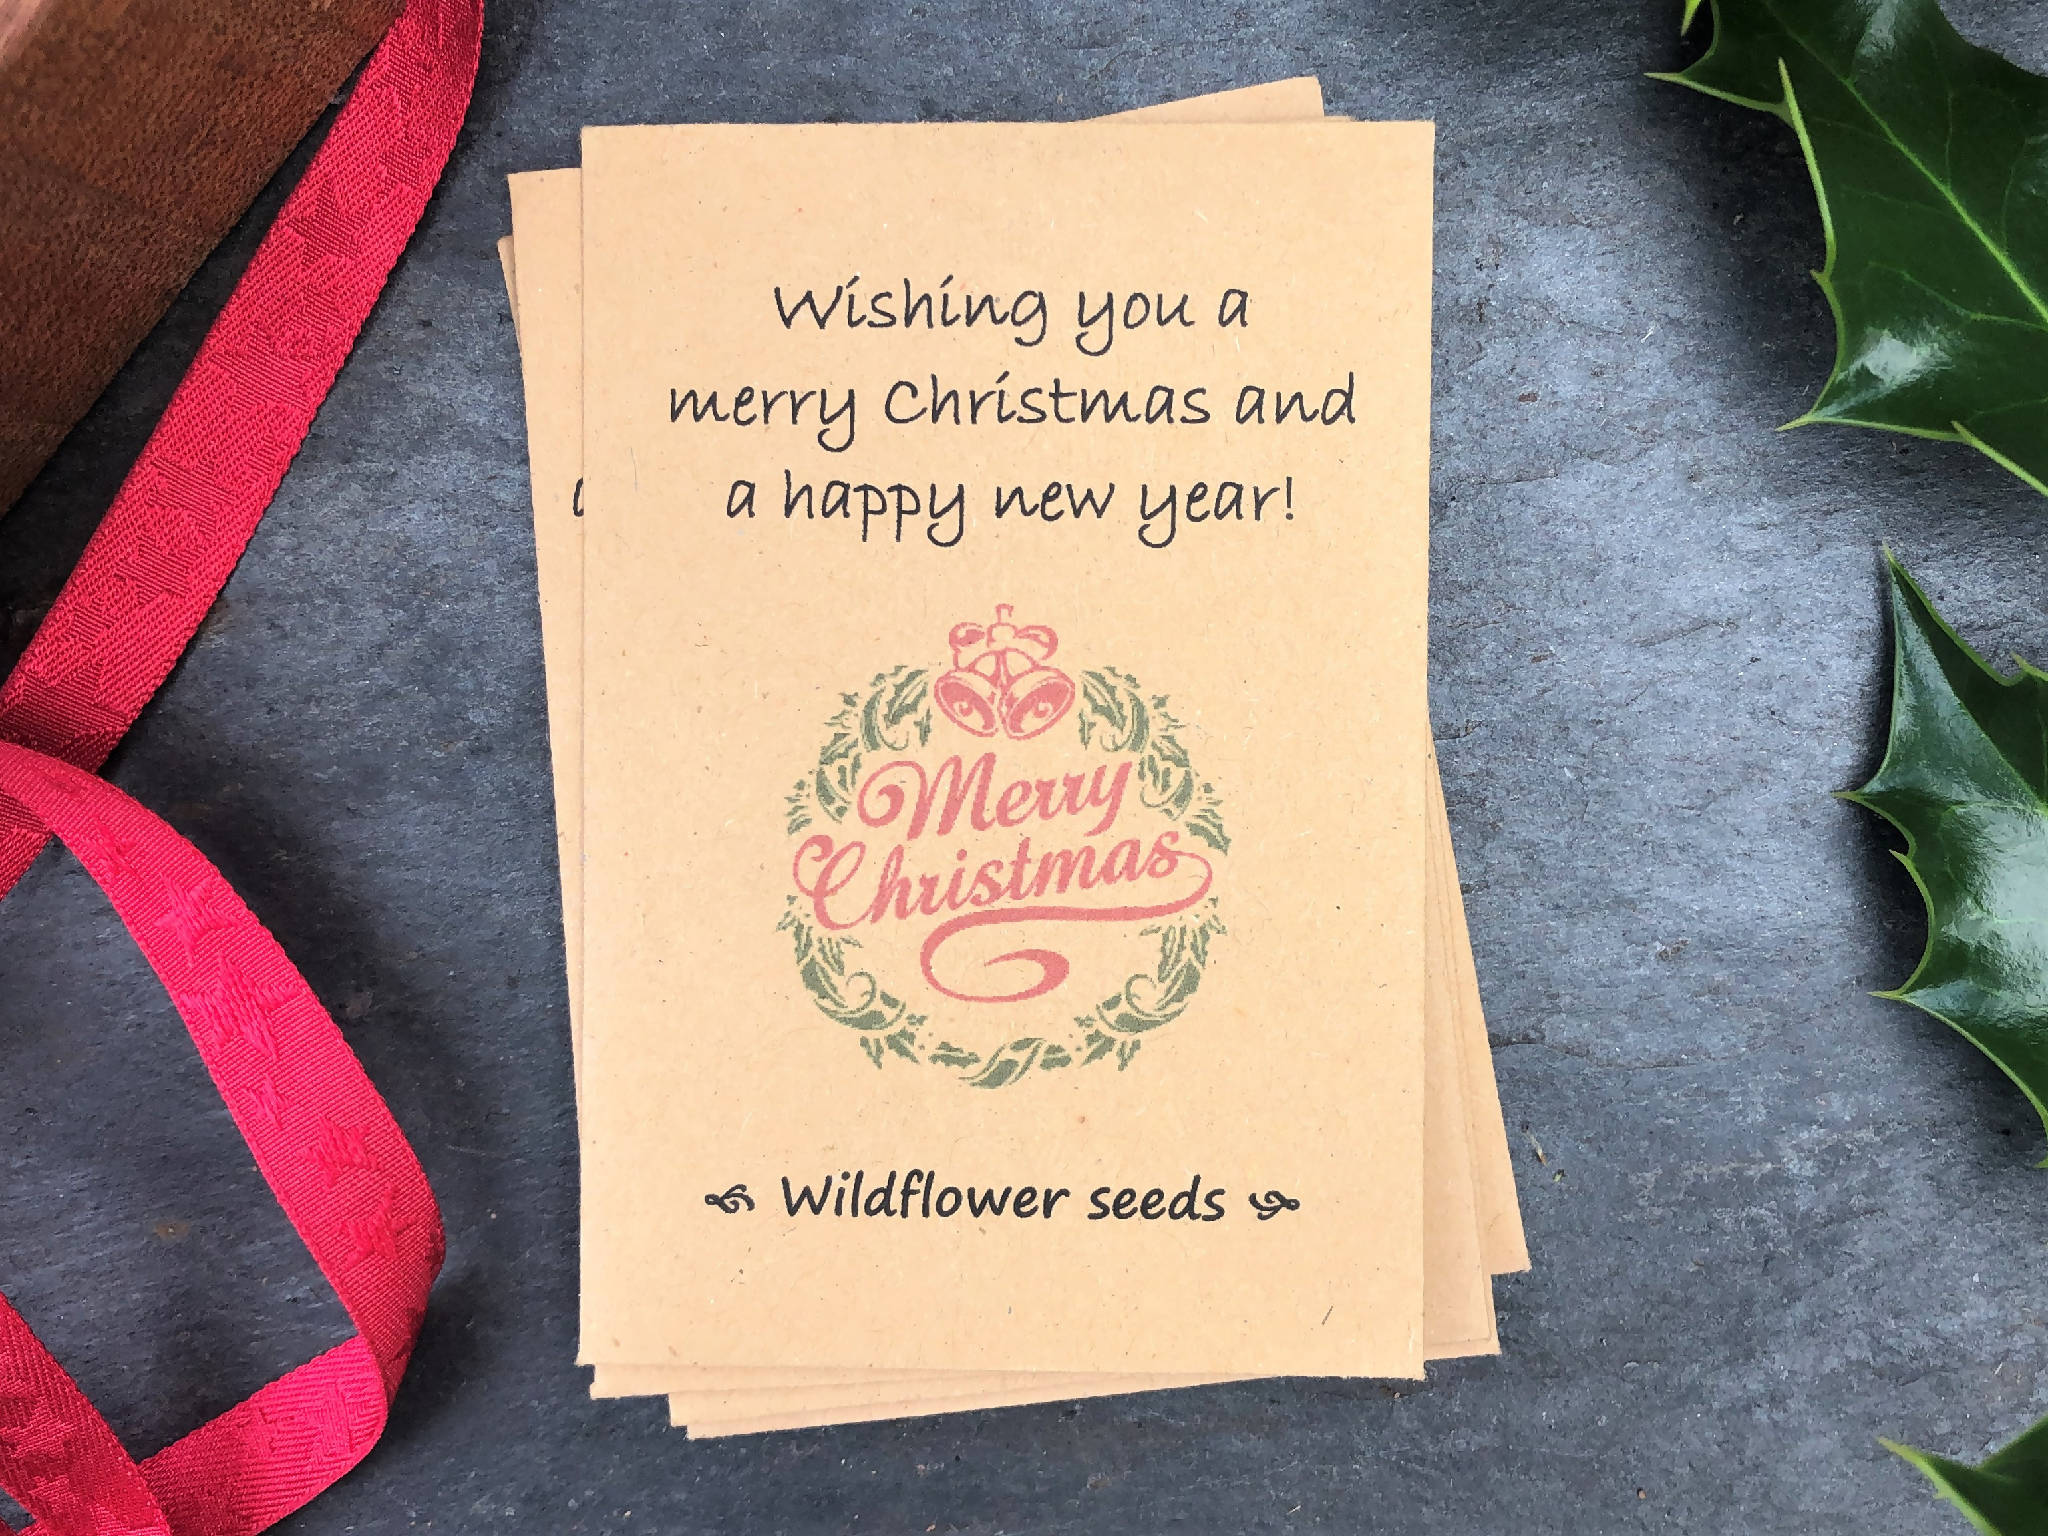 Christmas wildflower seeds - grown in Wales